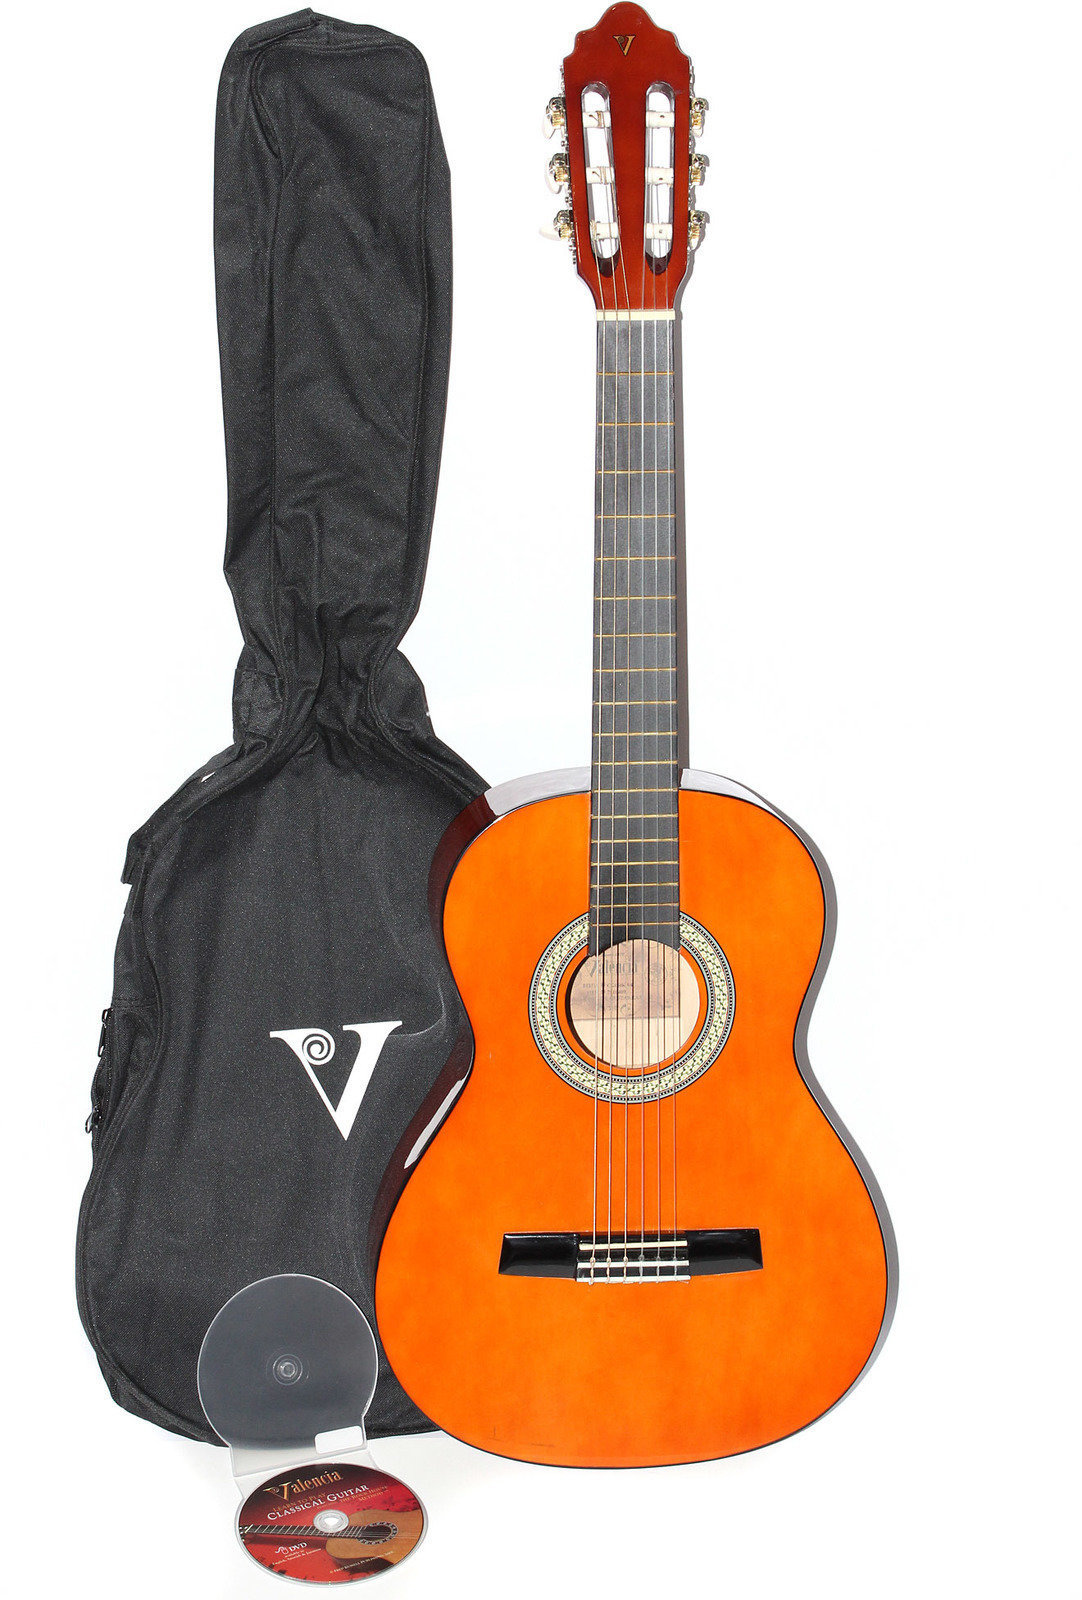 Guitare classique taile 3/4 pour enfant Valencia CG 150 K 3/4